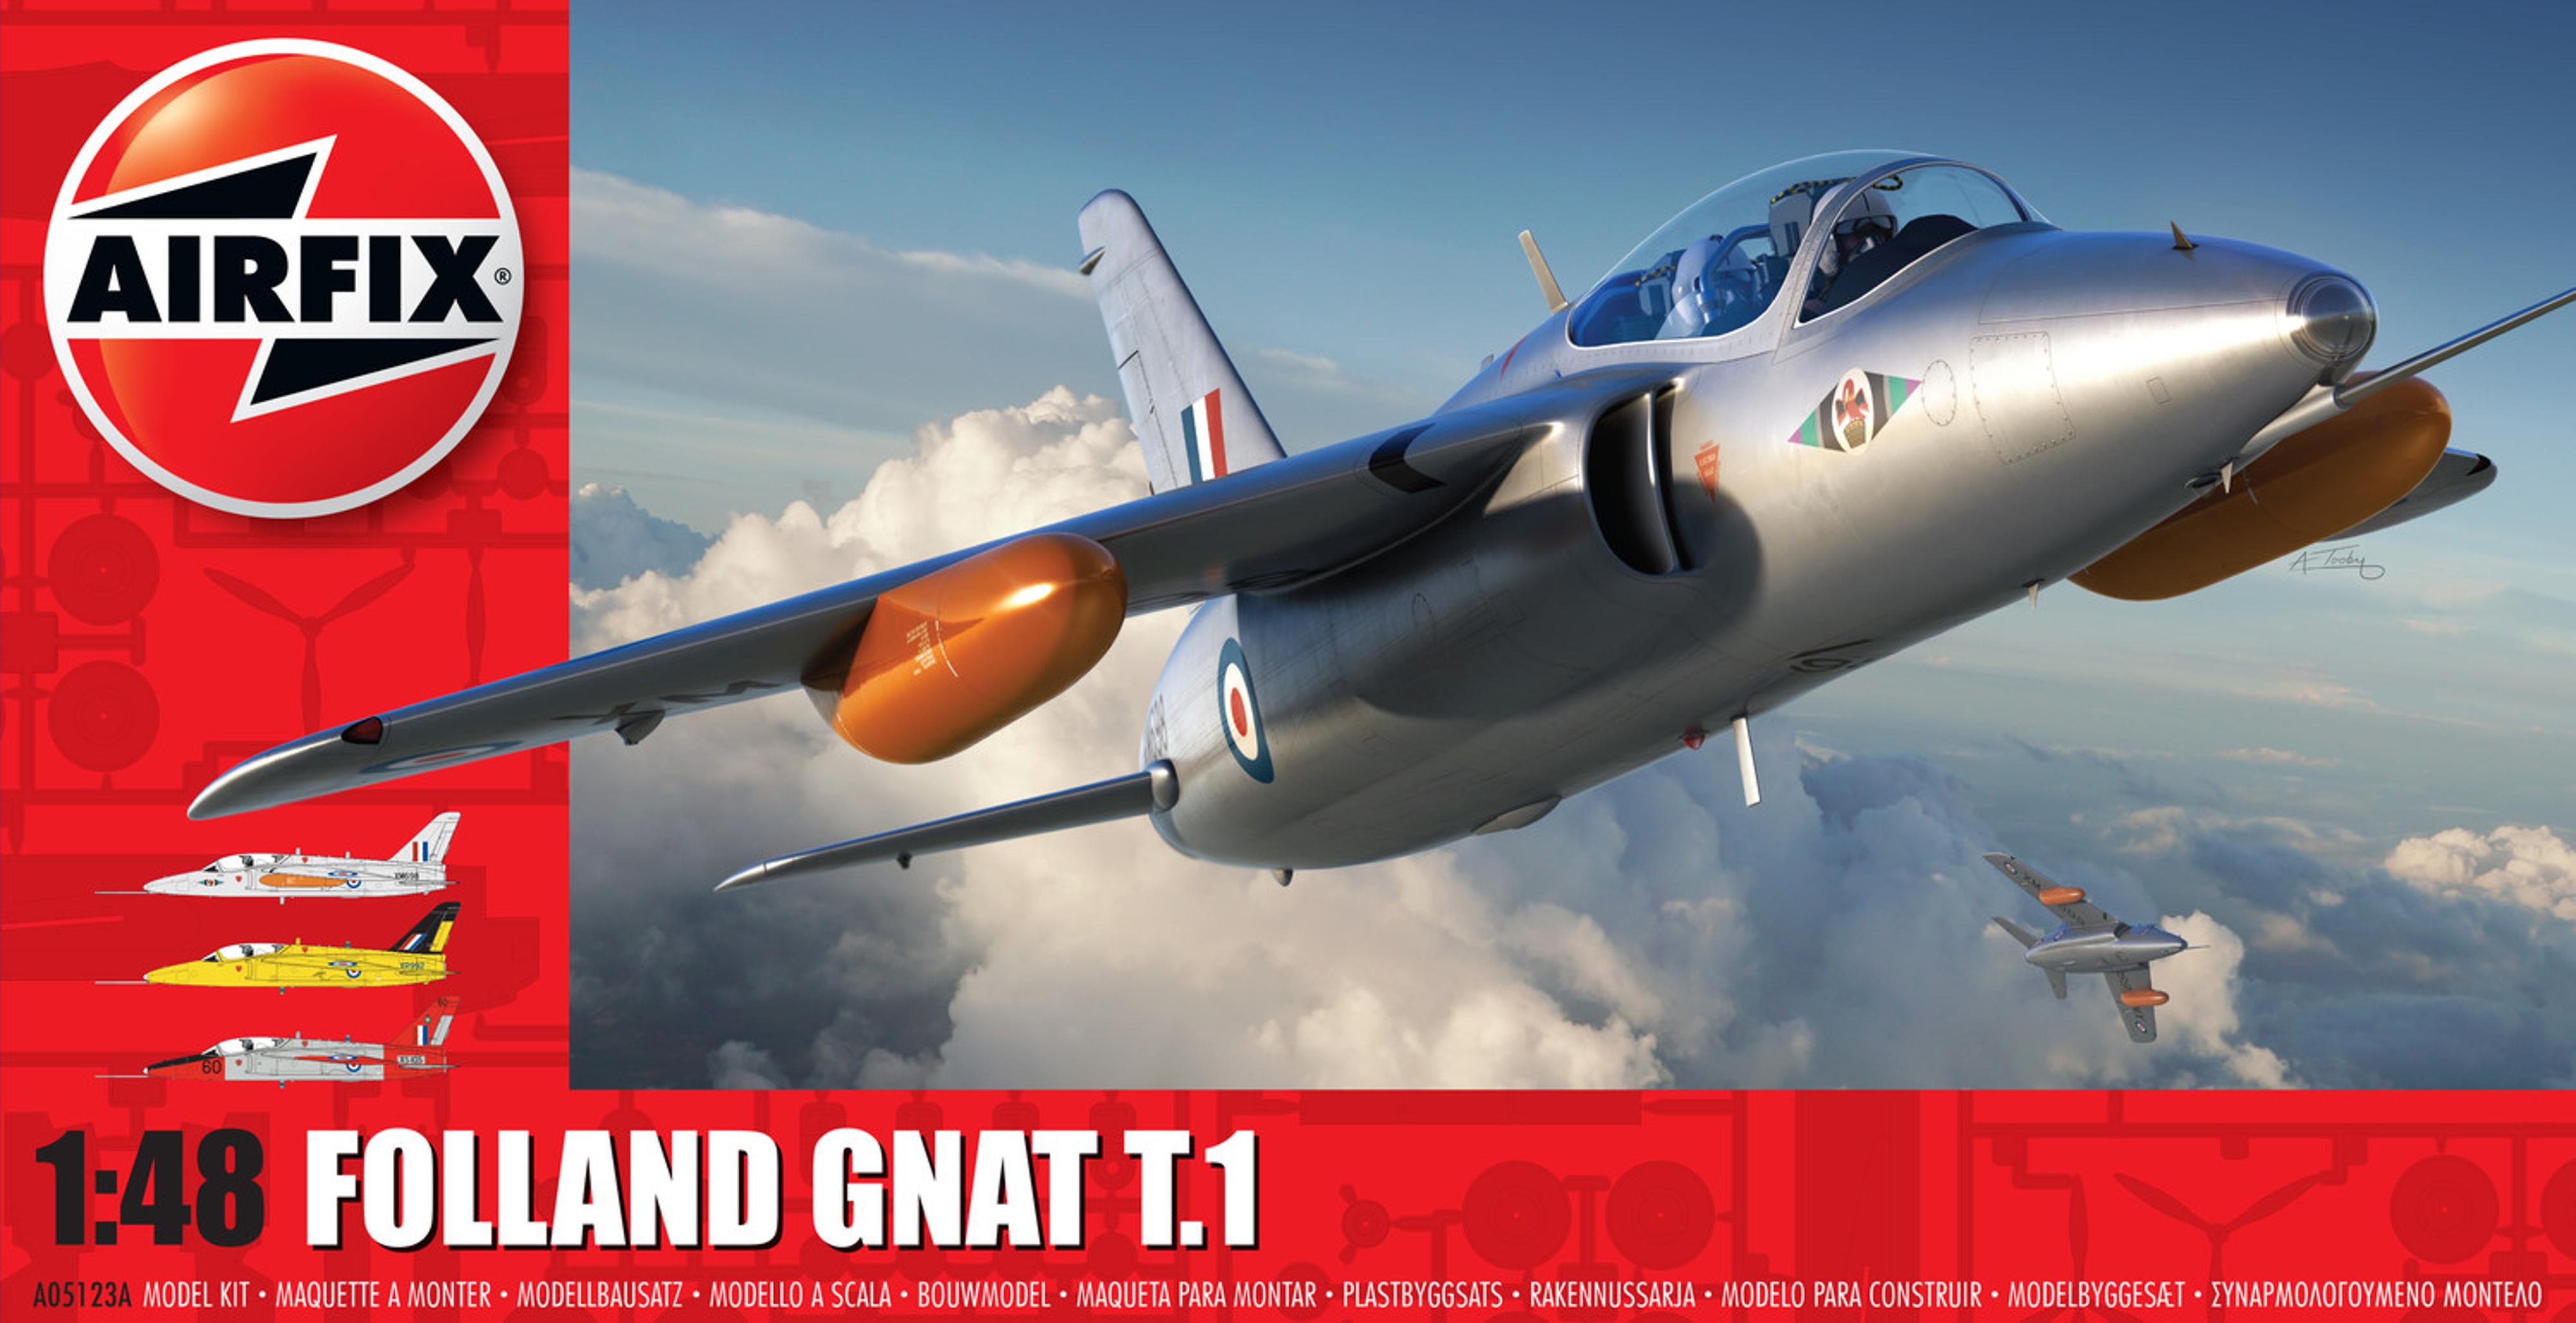 1/48 Folland Gnat T.1 Model Kit